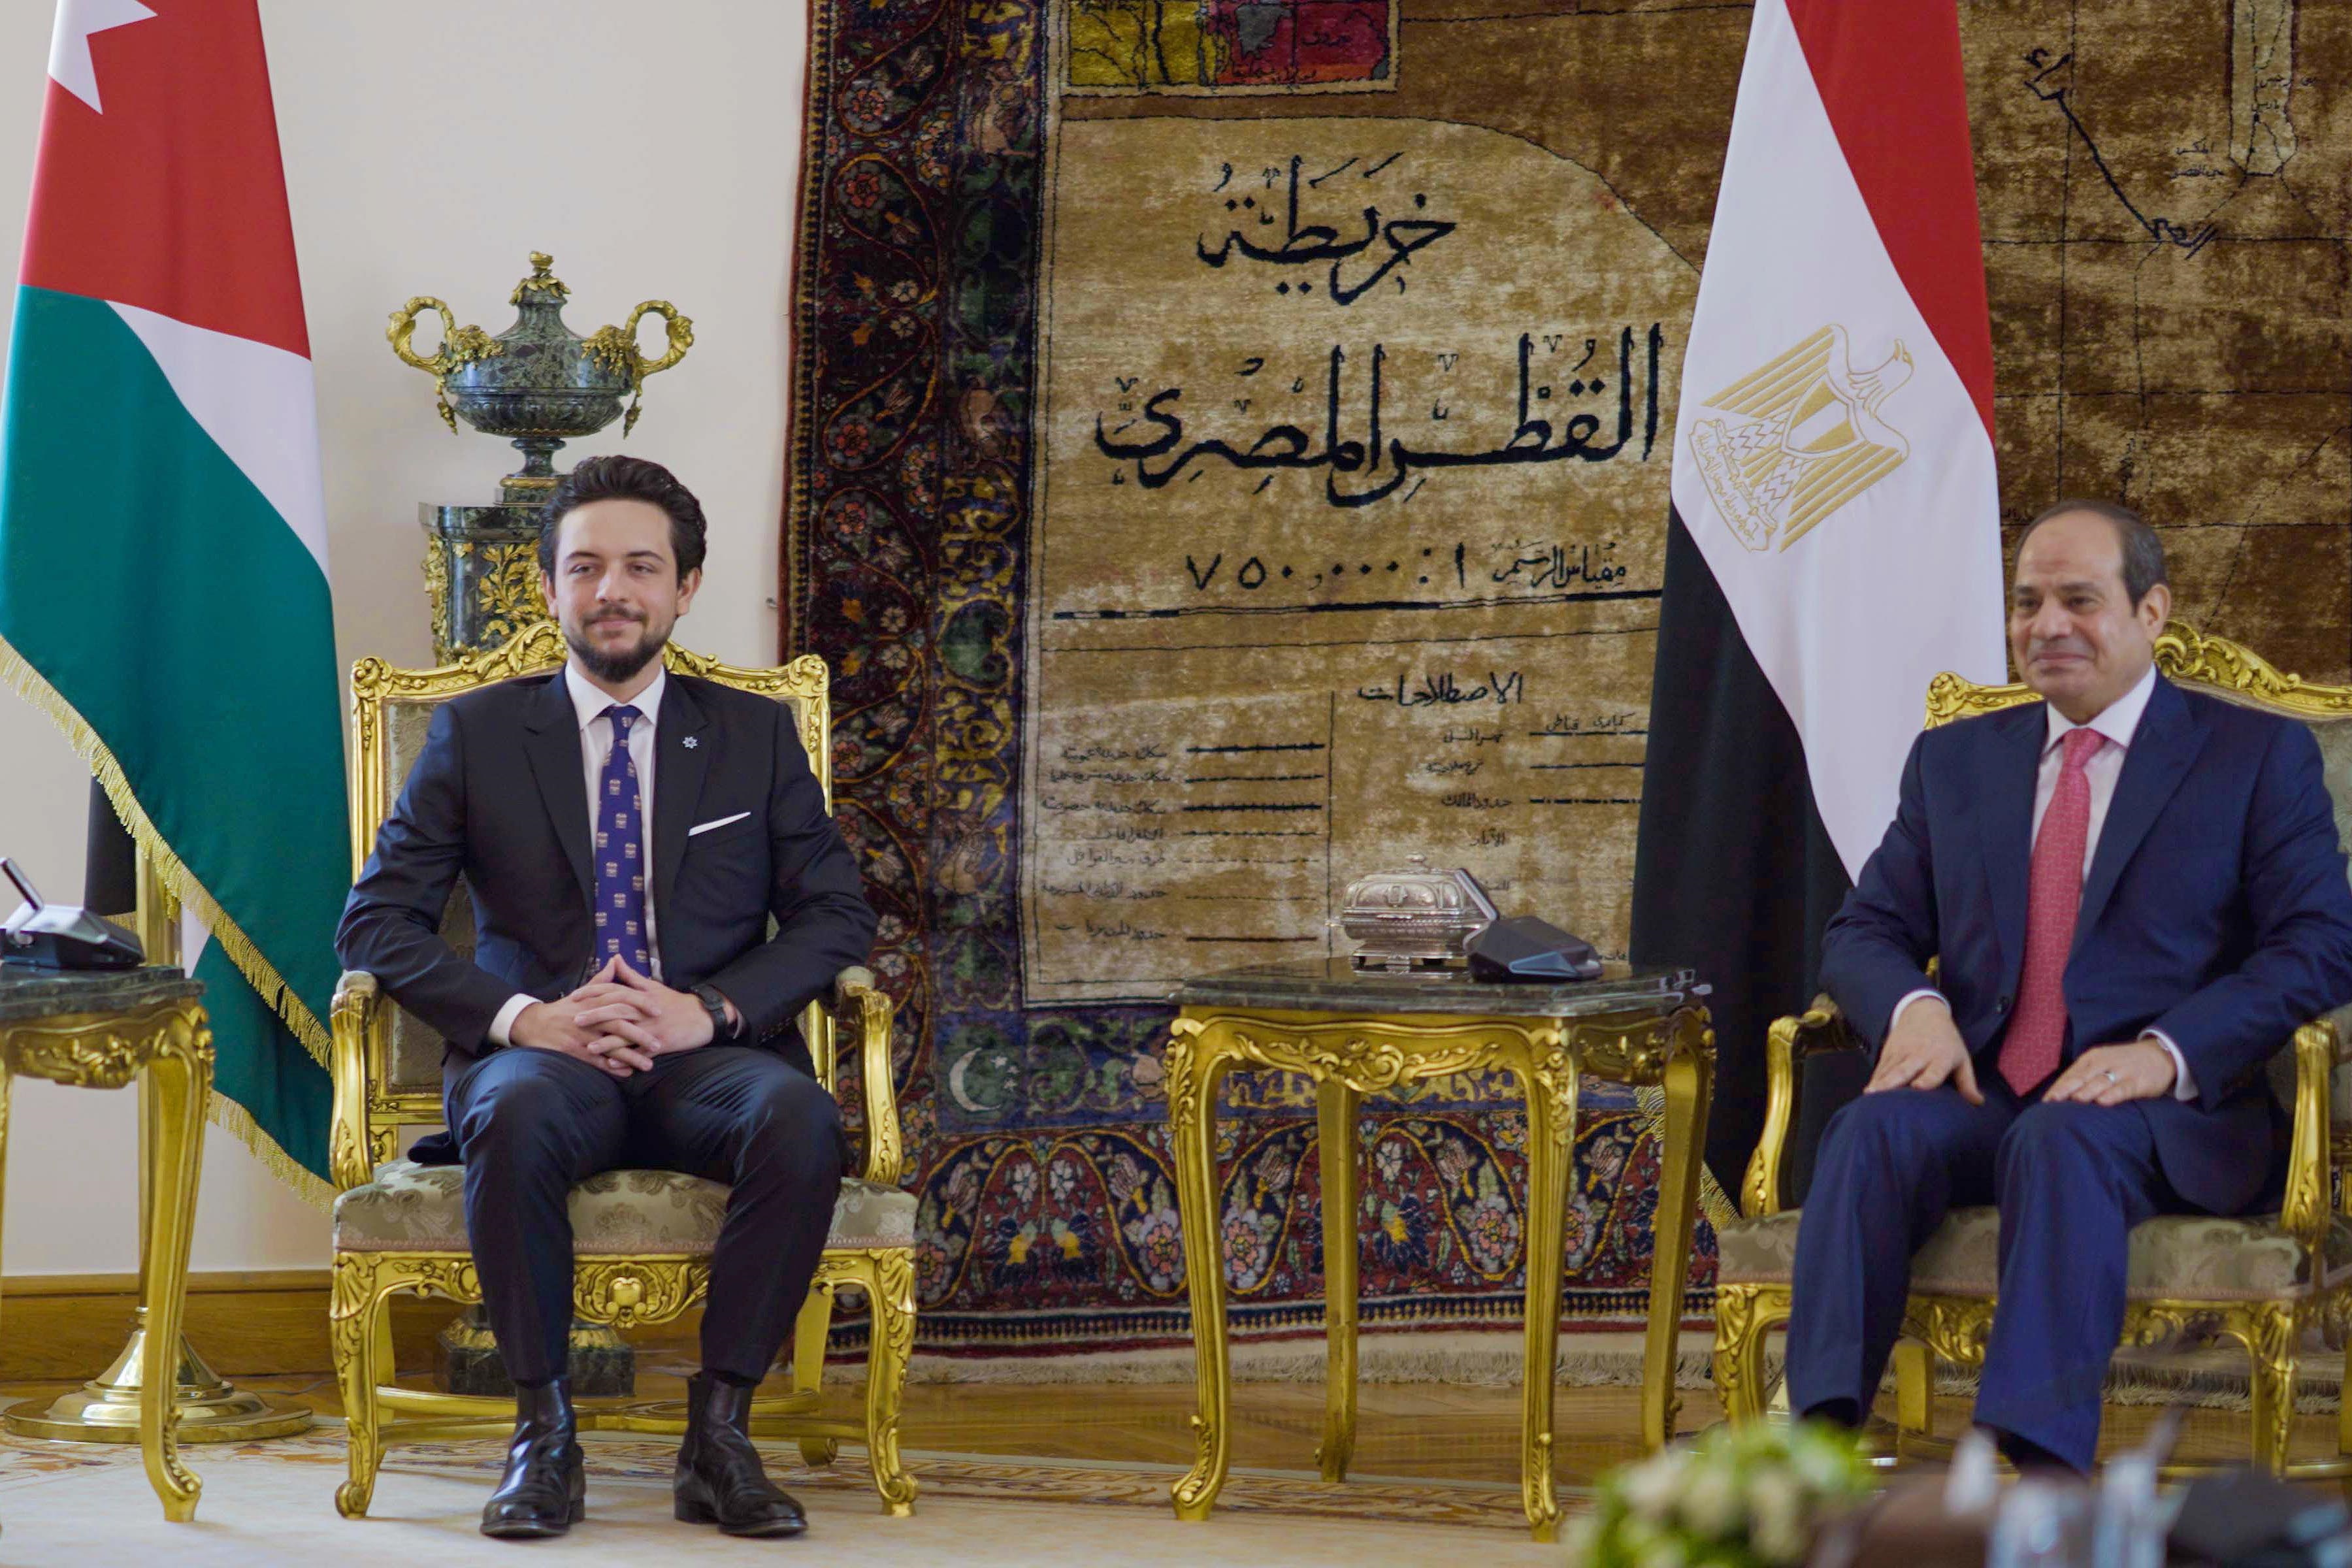 السيسي خلال استقباله  بقصر الاتحادية في القاهرة الأمير الحسين بن عبد الله، ولي عهد المملكة الأردنية الهاشمية (د ب ا)